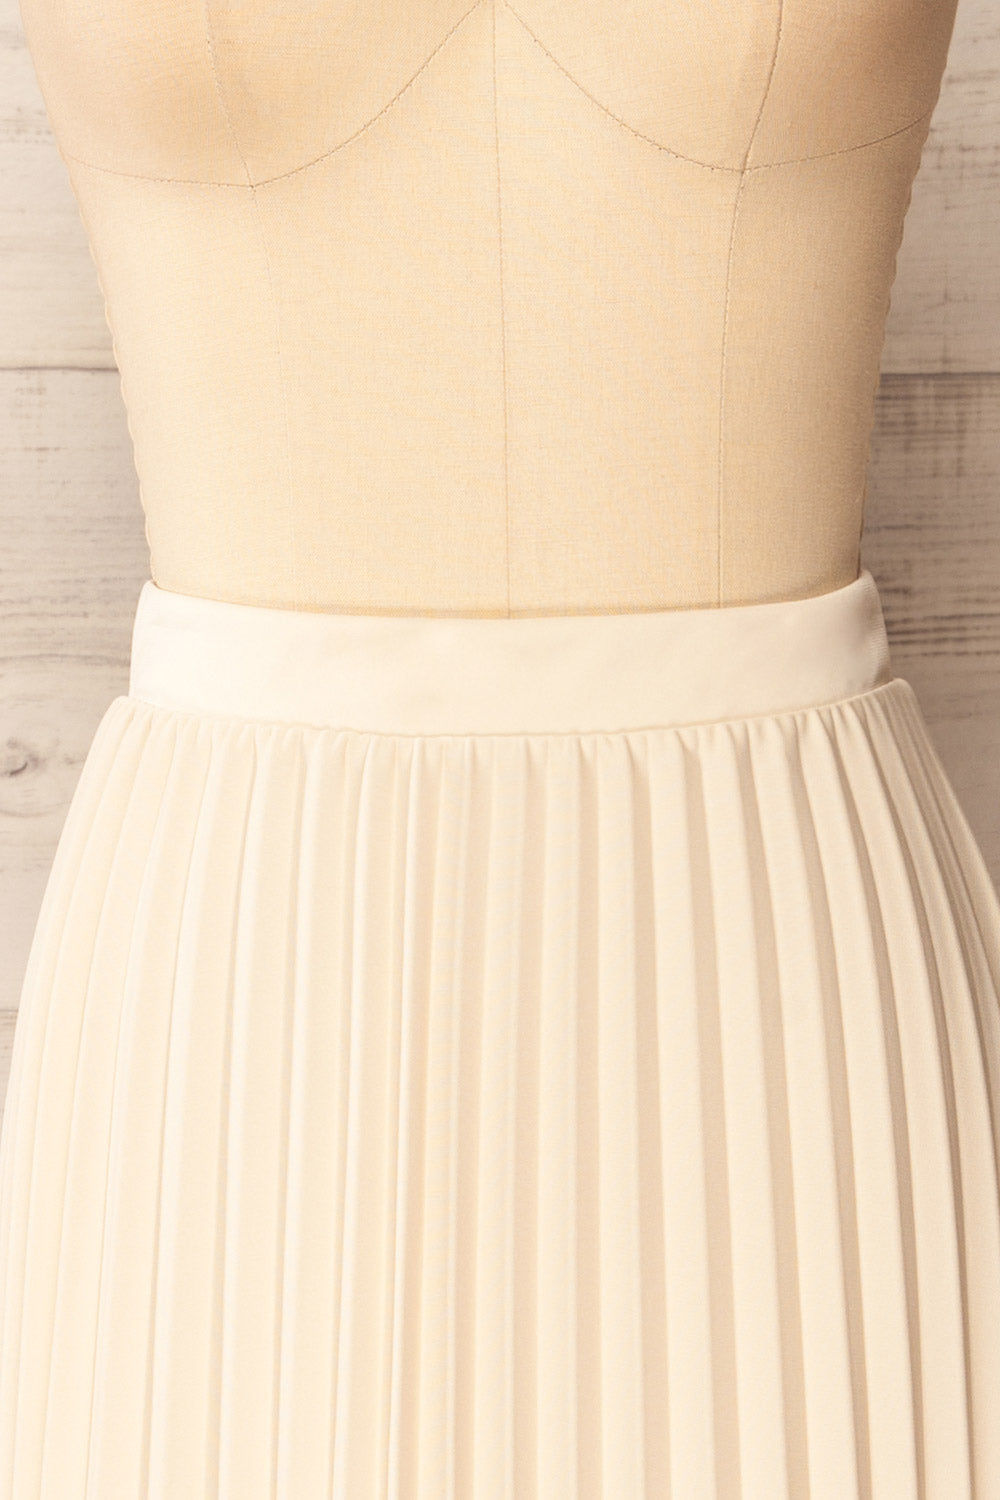 Vaduz Beige Pleated Maxi Skirt | La petite garçonne front close-up